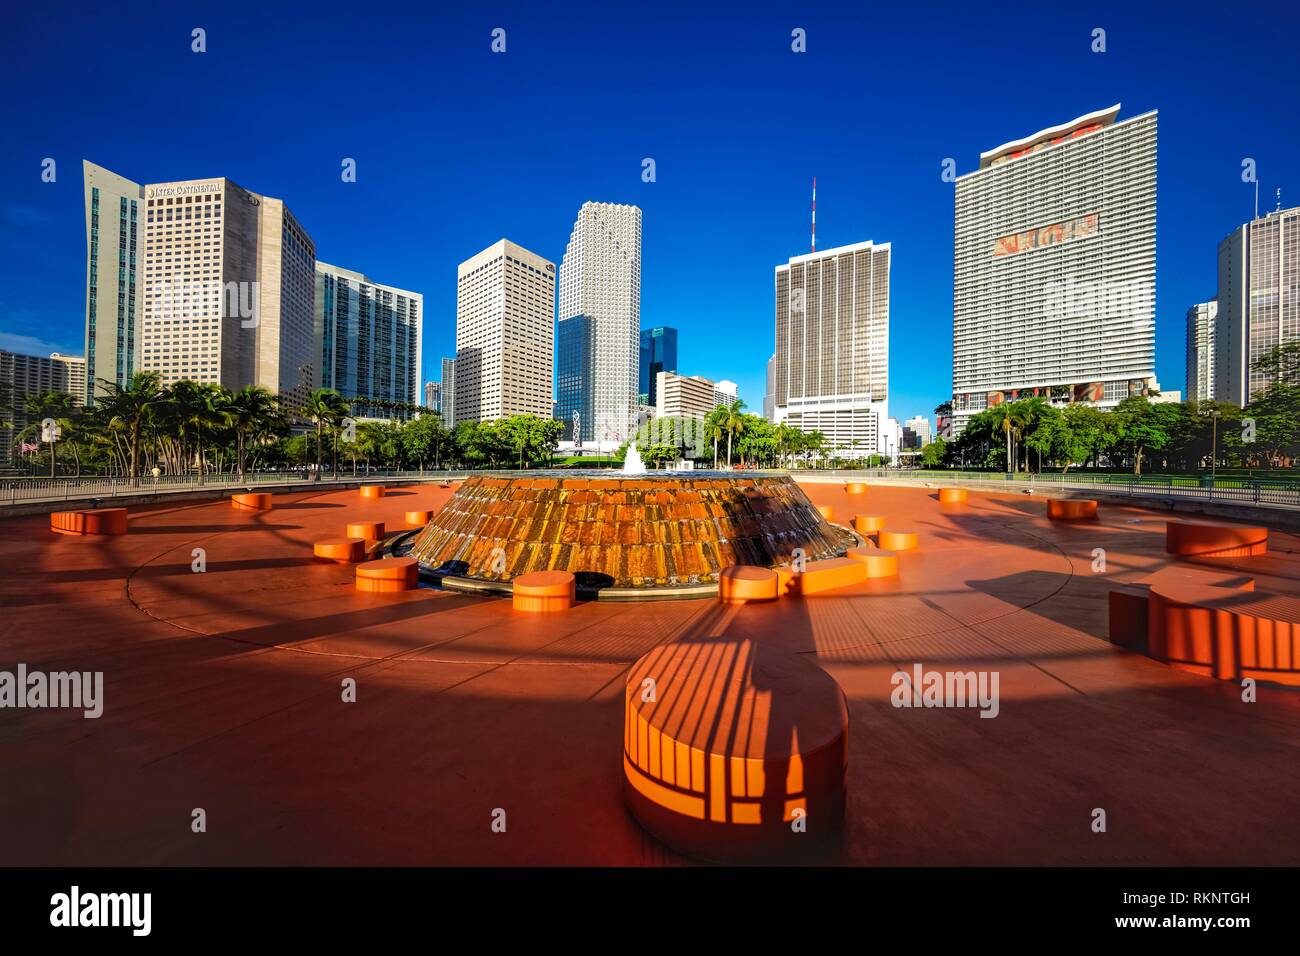 Bayfront Park. Downtown Miami. Florida. USA. Stock Photo